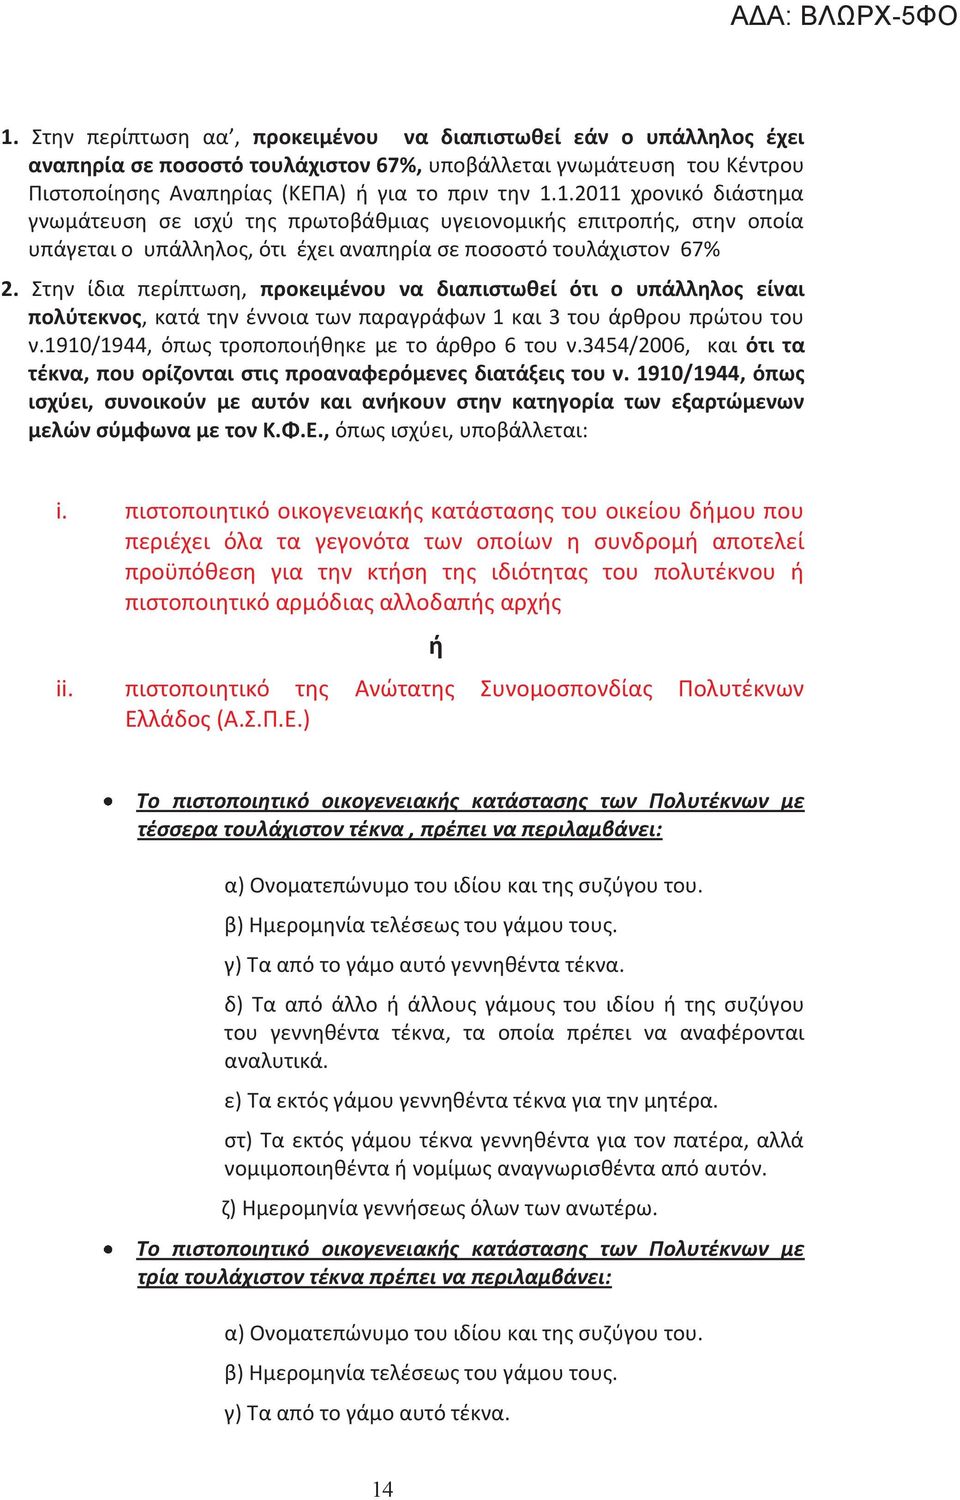 3454/2006, και ότι τα τέκνα, που ορίζονται στις προαναφερόμενες διατάξεις του ν. 1910/1944, όπως ισχύει, συνοικούν με αυτόν και ανήκουν στην κατηγορία των εξαρτώμενων μελών σύμφωνα με τον Κ.Φ.Ε.